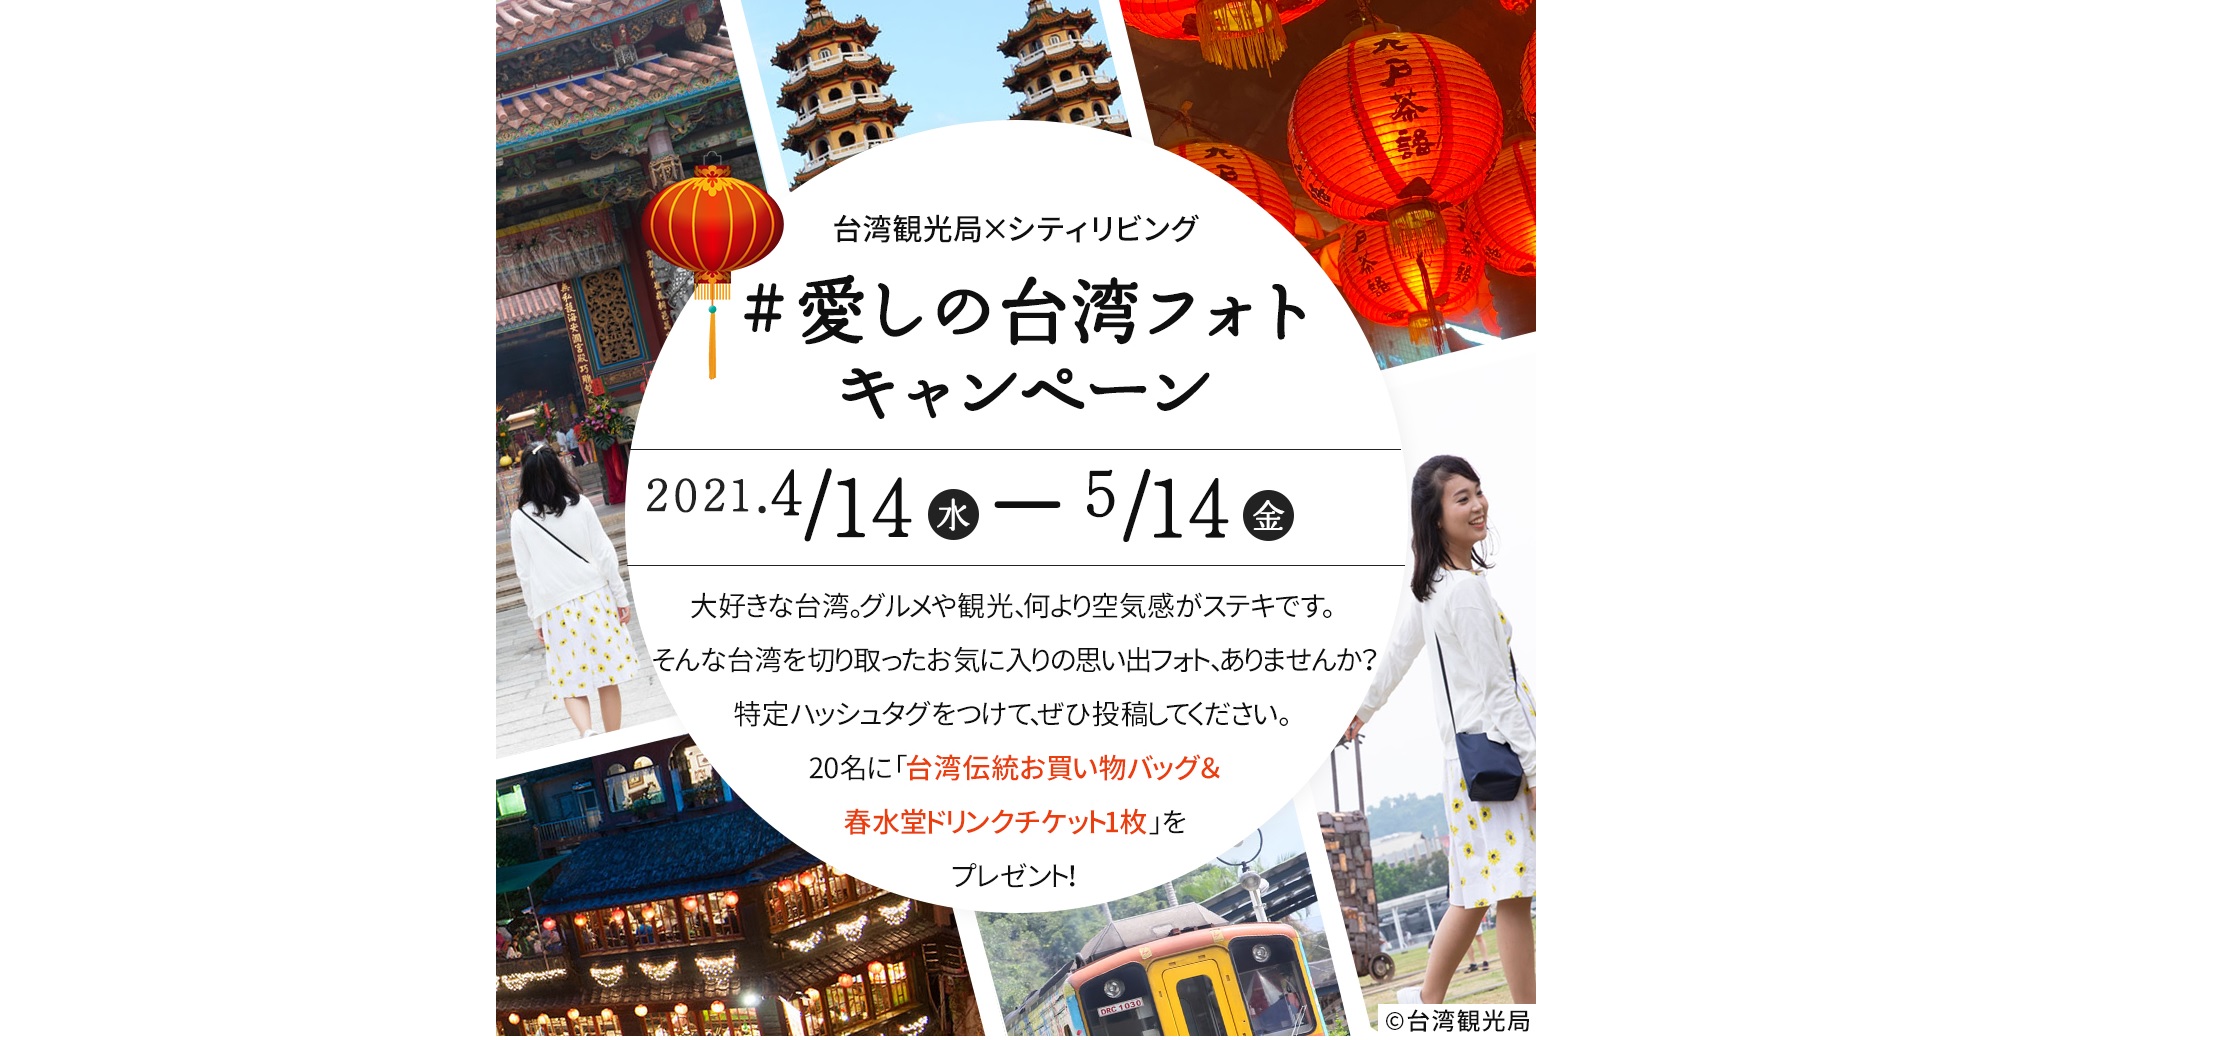 台湾観光局「愛しの台湾フォトキャンペーン」をスタート